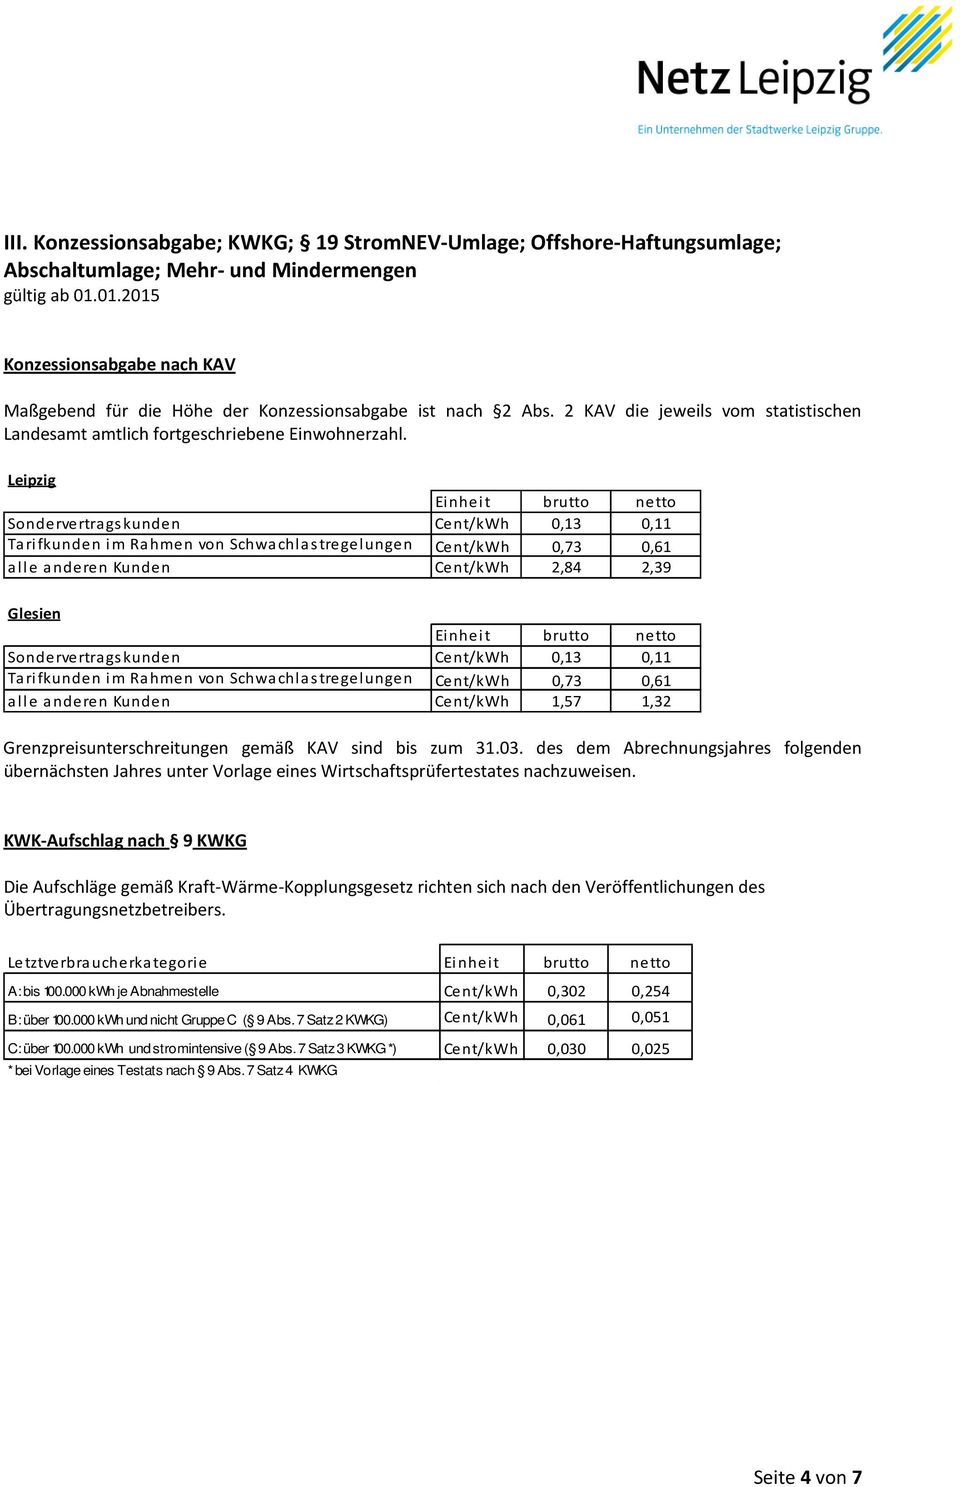 Leipzig Sondervertrags kunden Cent/kWh 0,13 0,11 Tari fkunden i m Rahmen von Schwachlas tregelungen Cent/kWh 0,73 0,61 alle anderen Kunden Cent/kWh 2,84 2,39 Glesien Sondervertrags kunden Cent/kWh